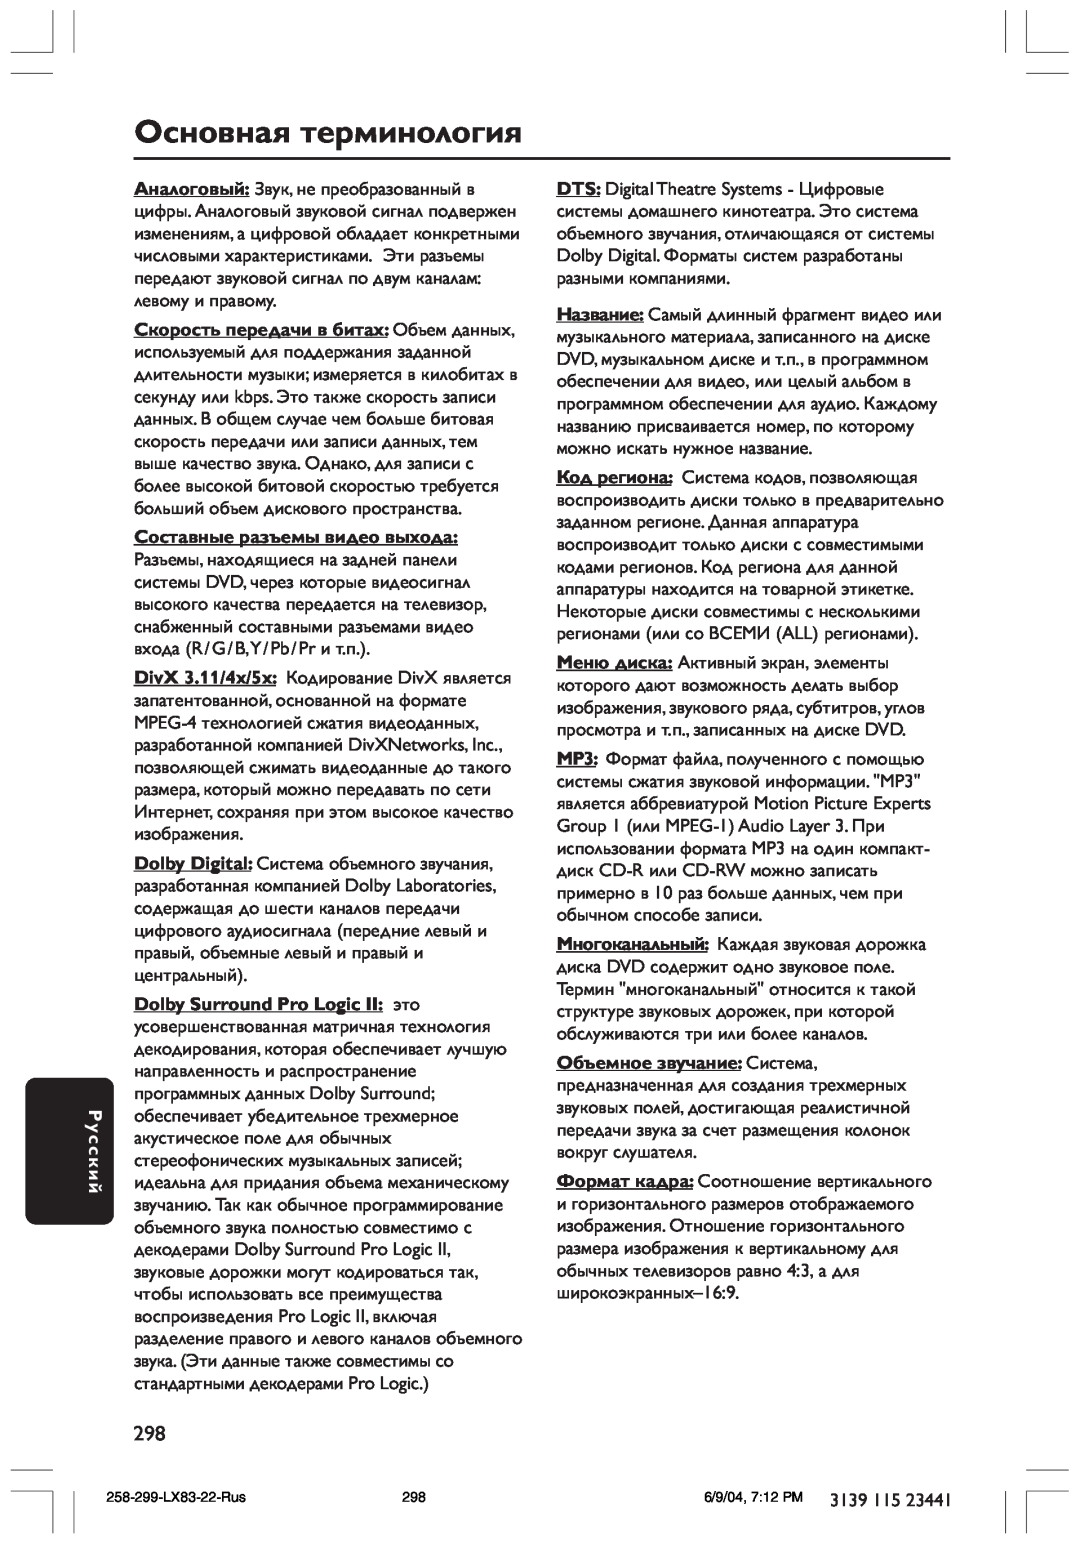 Philips LX8300SA user manual Основная терминология, Русский, Составные разъемы видео выхода 